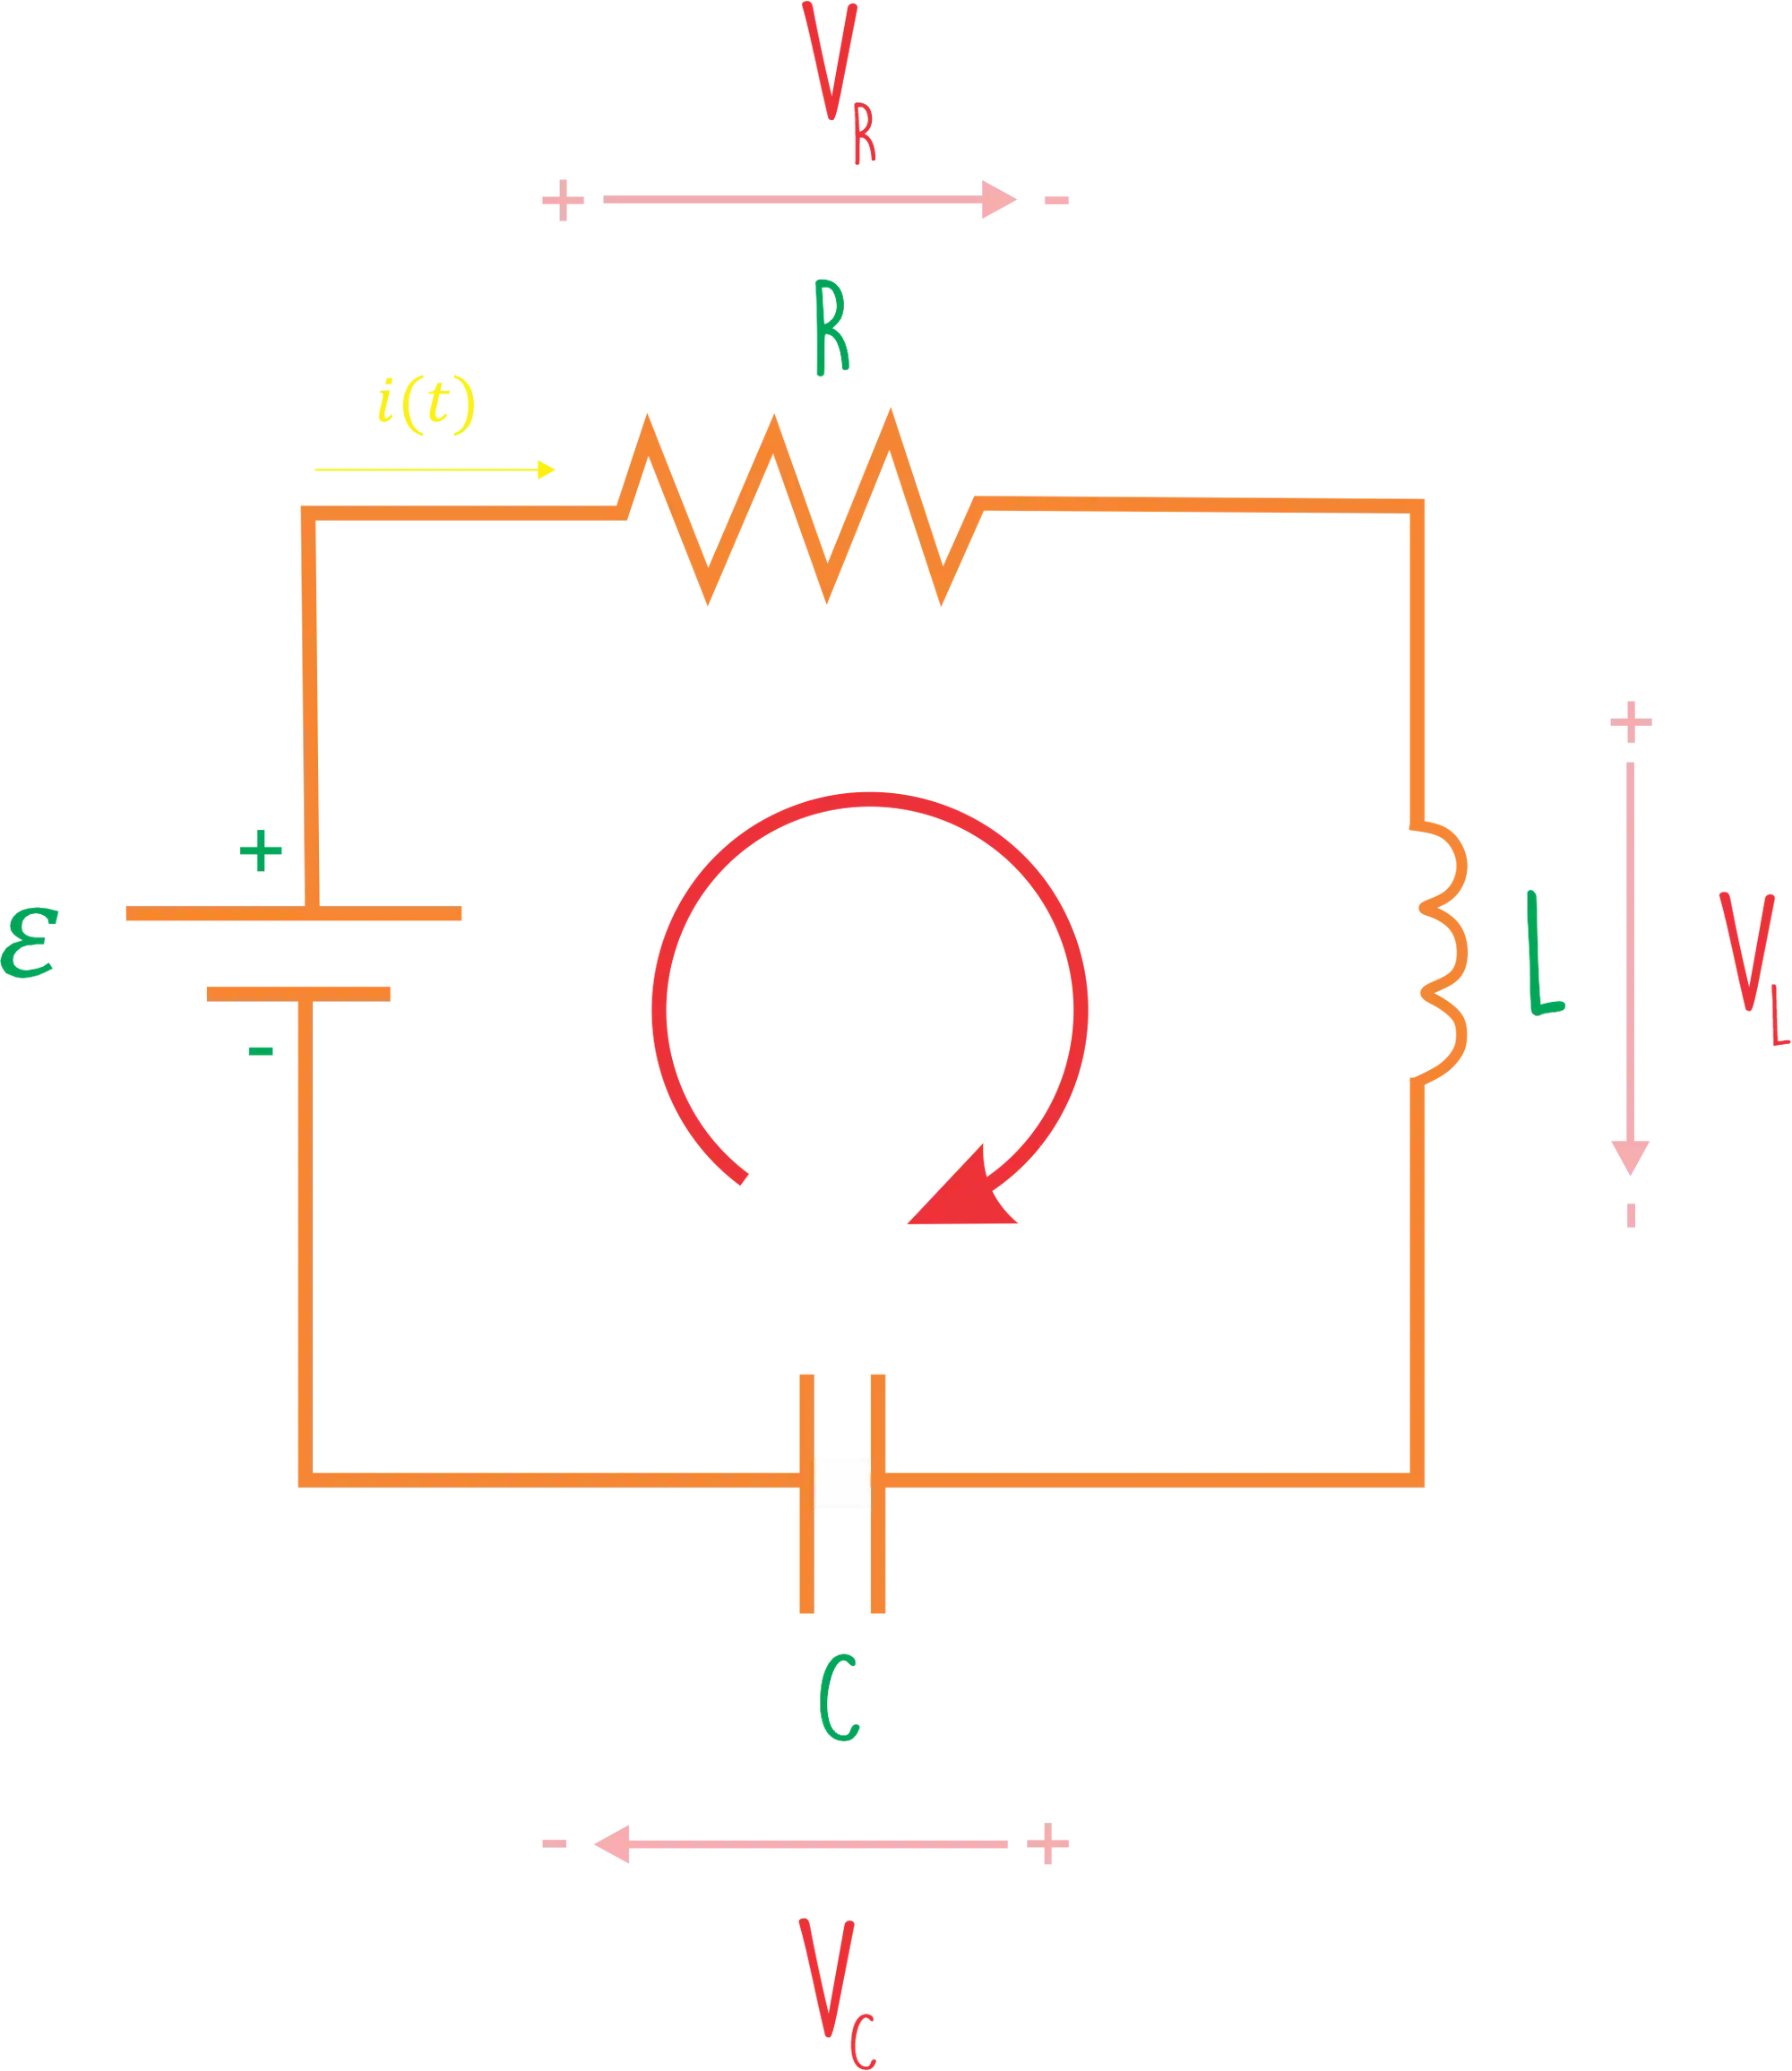 Representação de um circuito RLC